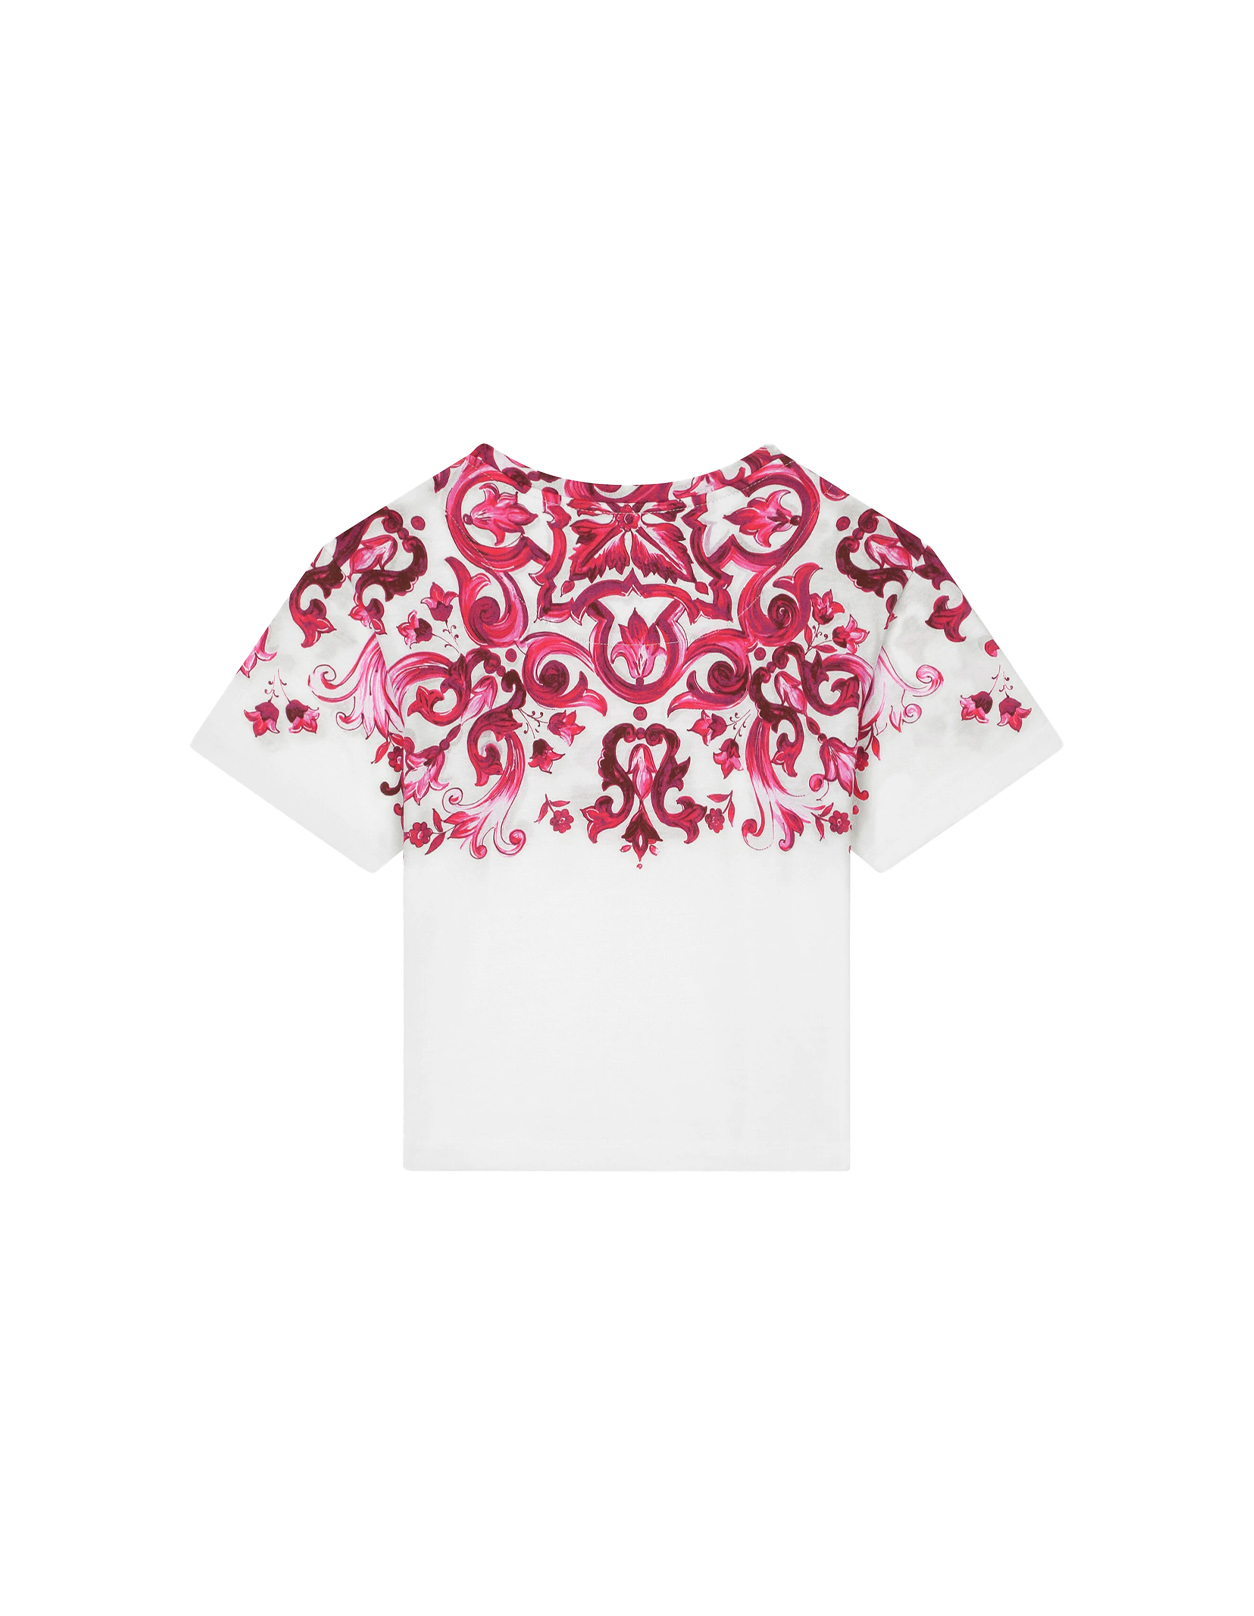 White T-Shirt With Fuchsia Majolica Print - DOLCE & GABBANA KIDS